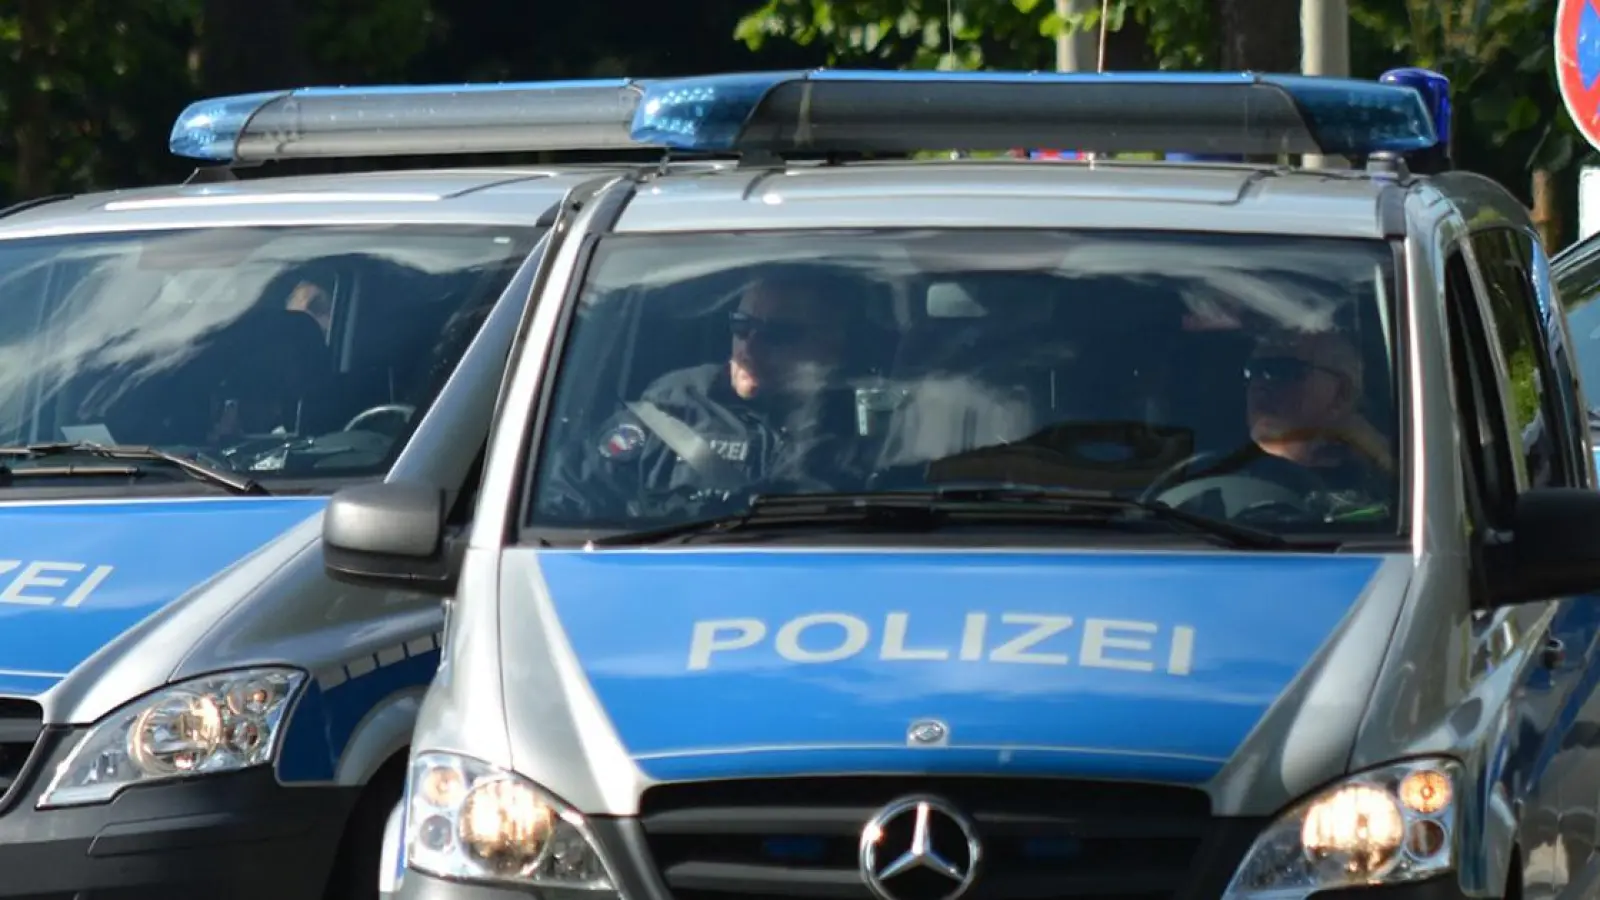 Die Kriminalpolizei Weiden i.d.Opf. ermittelt nach einem tödlichen Arbeitsunfall im Landkreis Tirschenreuth. (Symbolbild: pixabay)